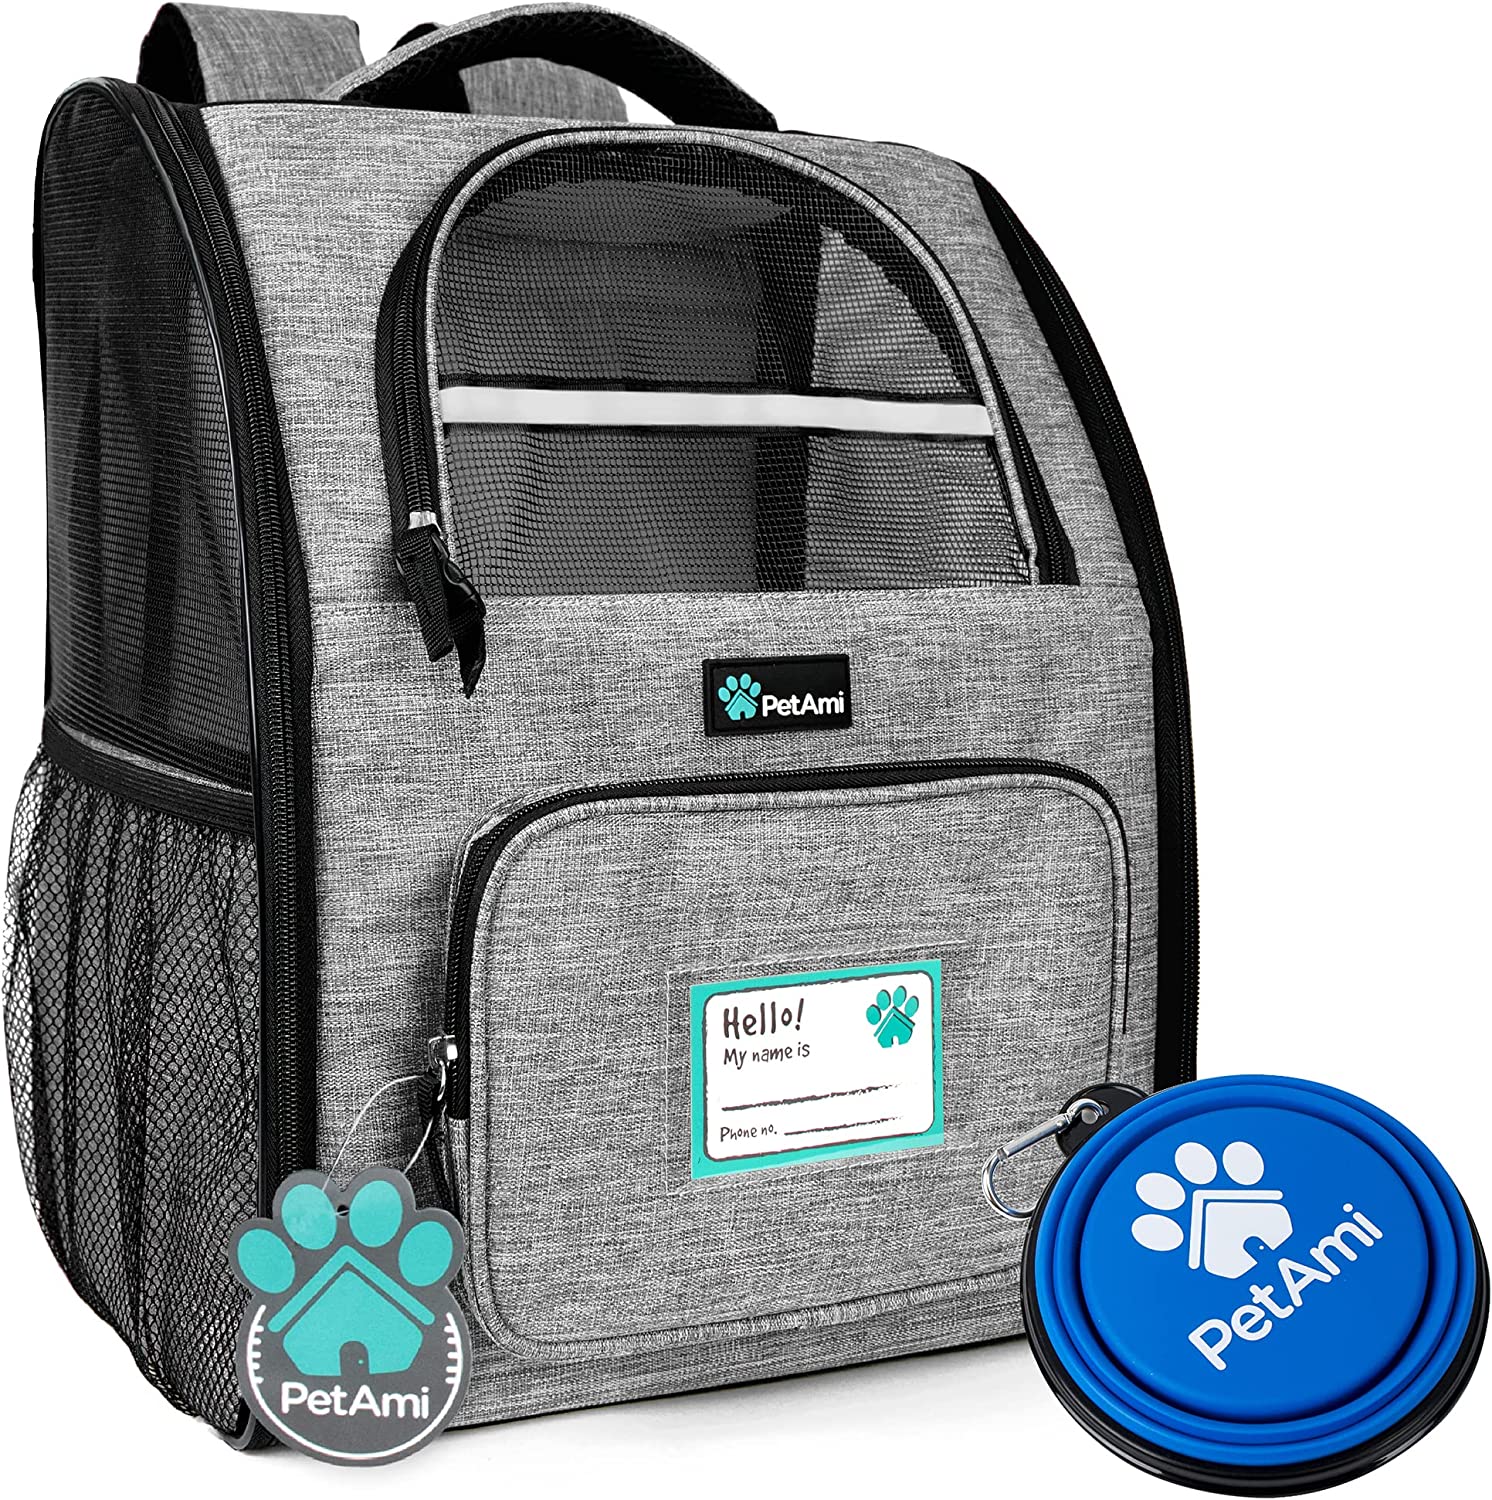 4. PetAmi Deluxe Pet Carrier Backpack